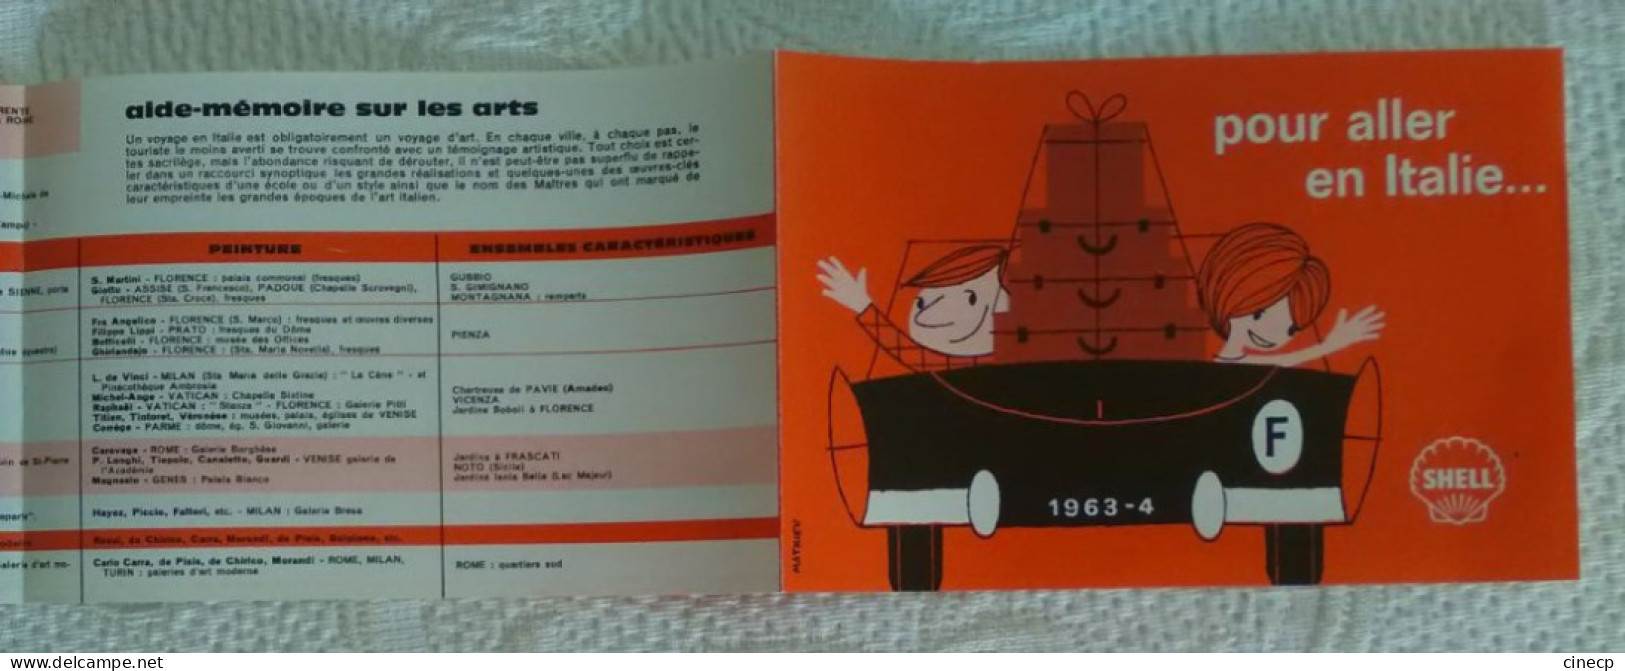 Dépliant Publicitaire Shell 1963 "POUR ALLER EN ITALIE" Couple dans voiture coupé Illustrateur MATHIEU Carte routière